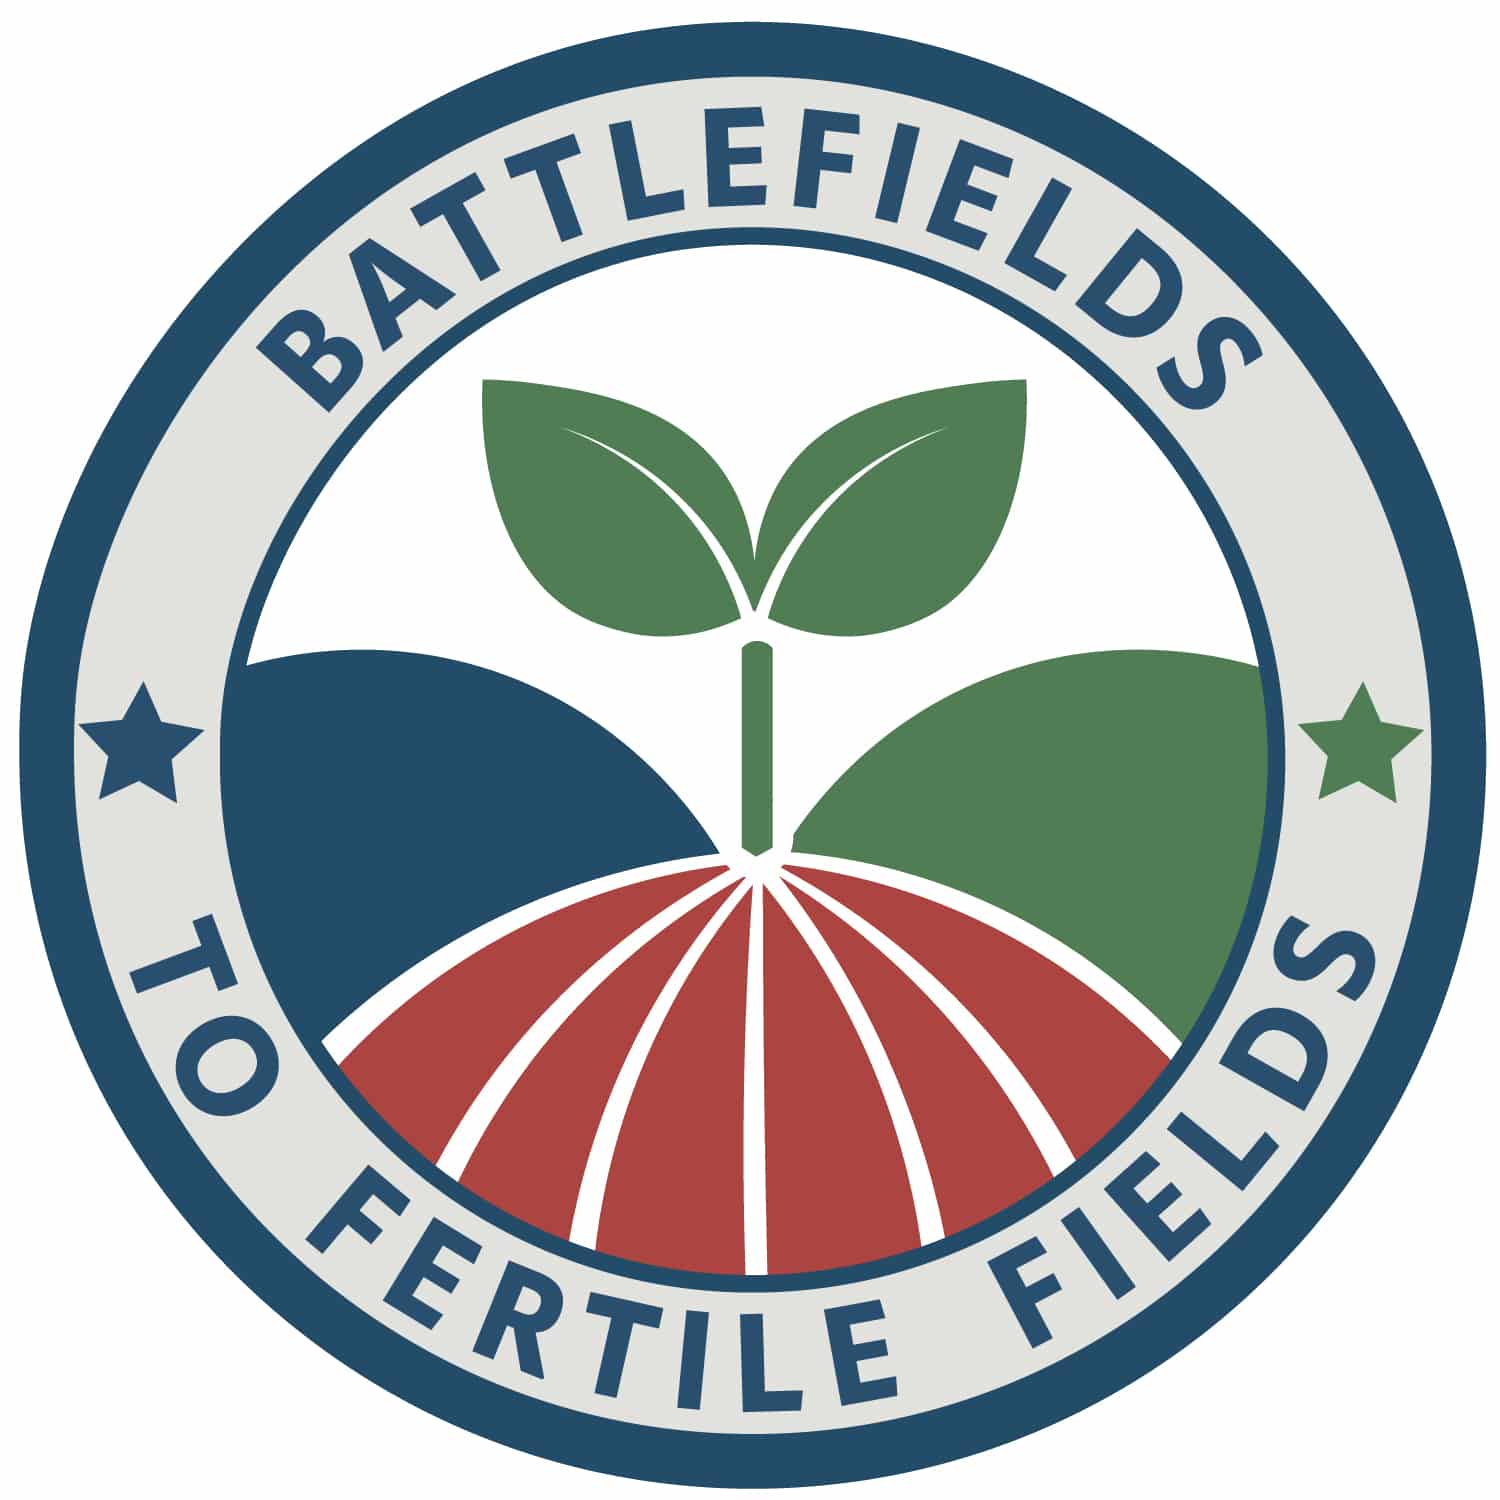 Battlefields to Fertile Fields